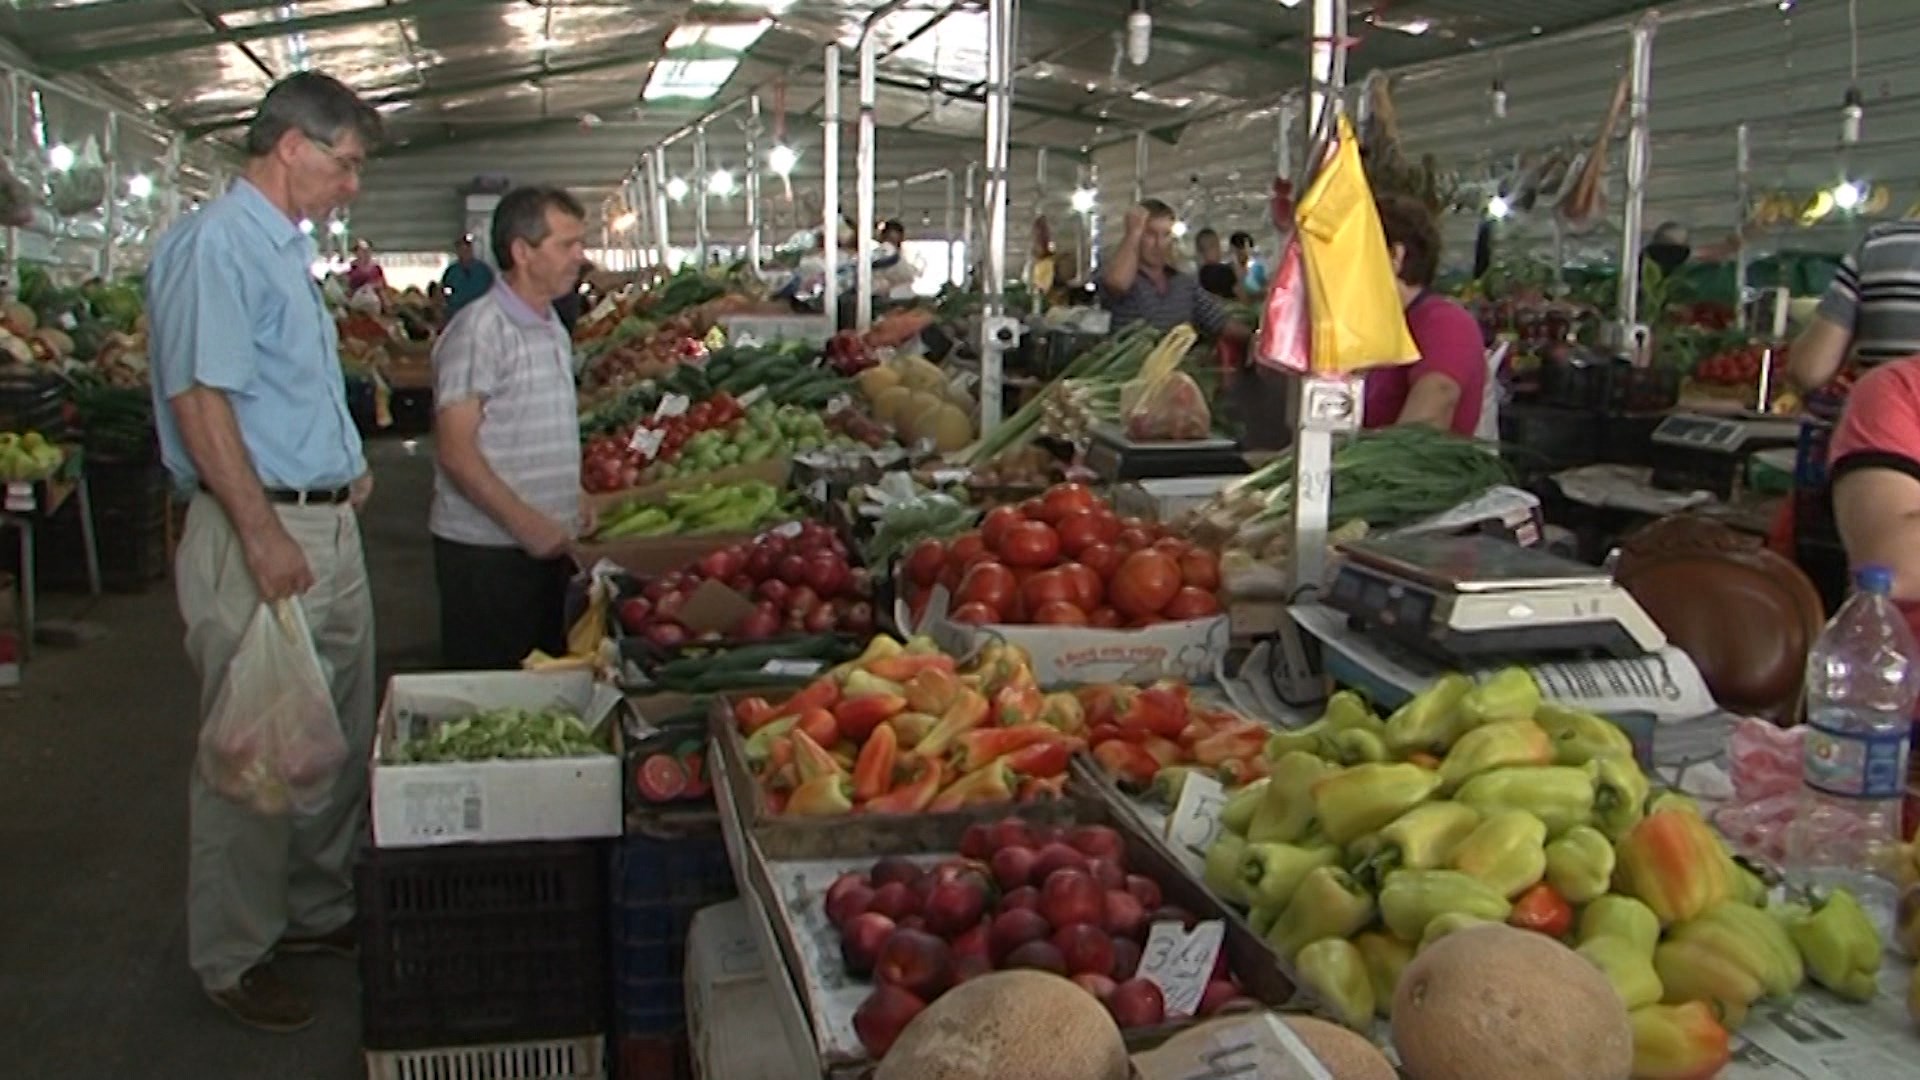  Rritja e çmimit të ushqimeve, shqetësimi kryesor për qytetarët